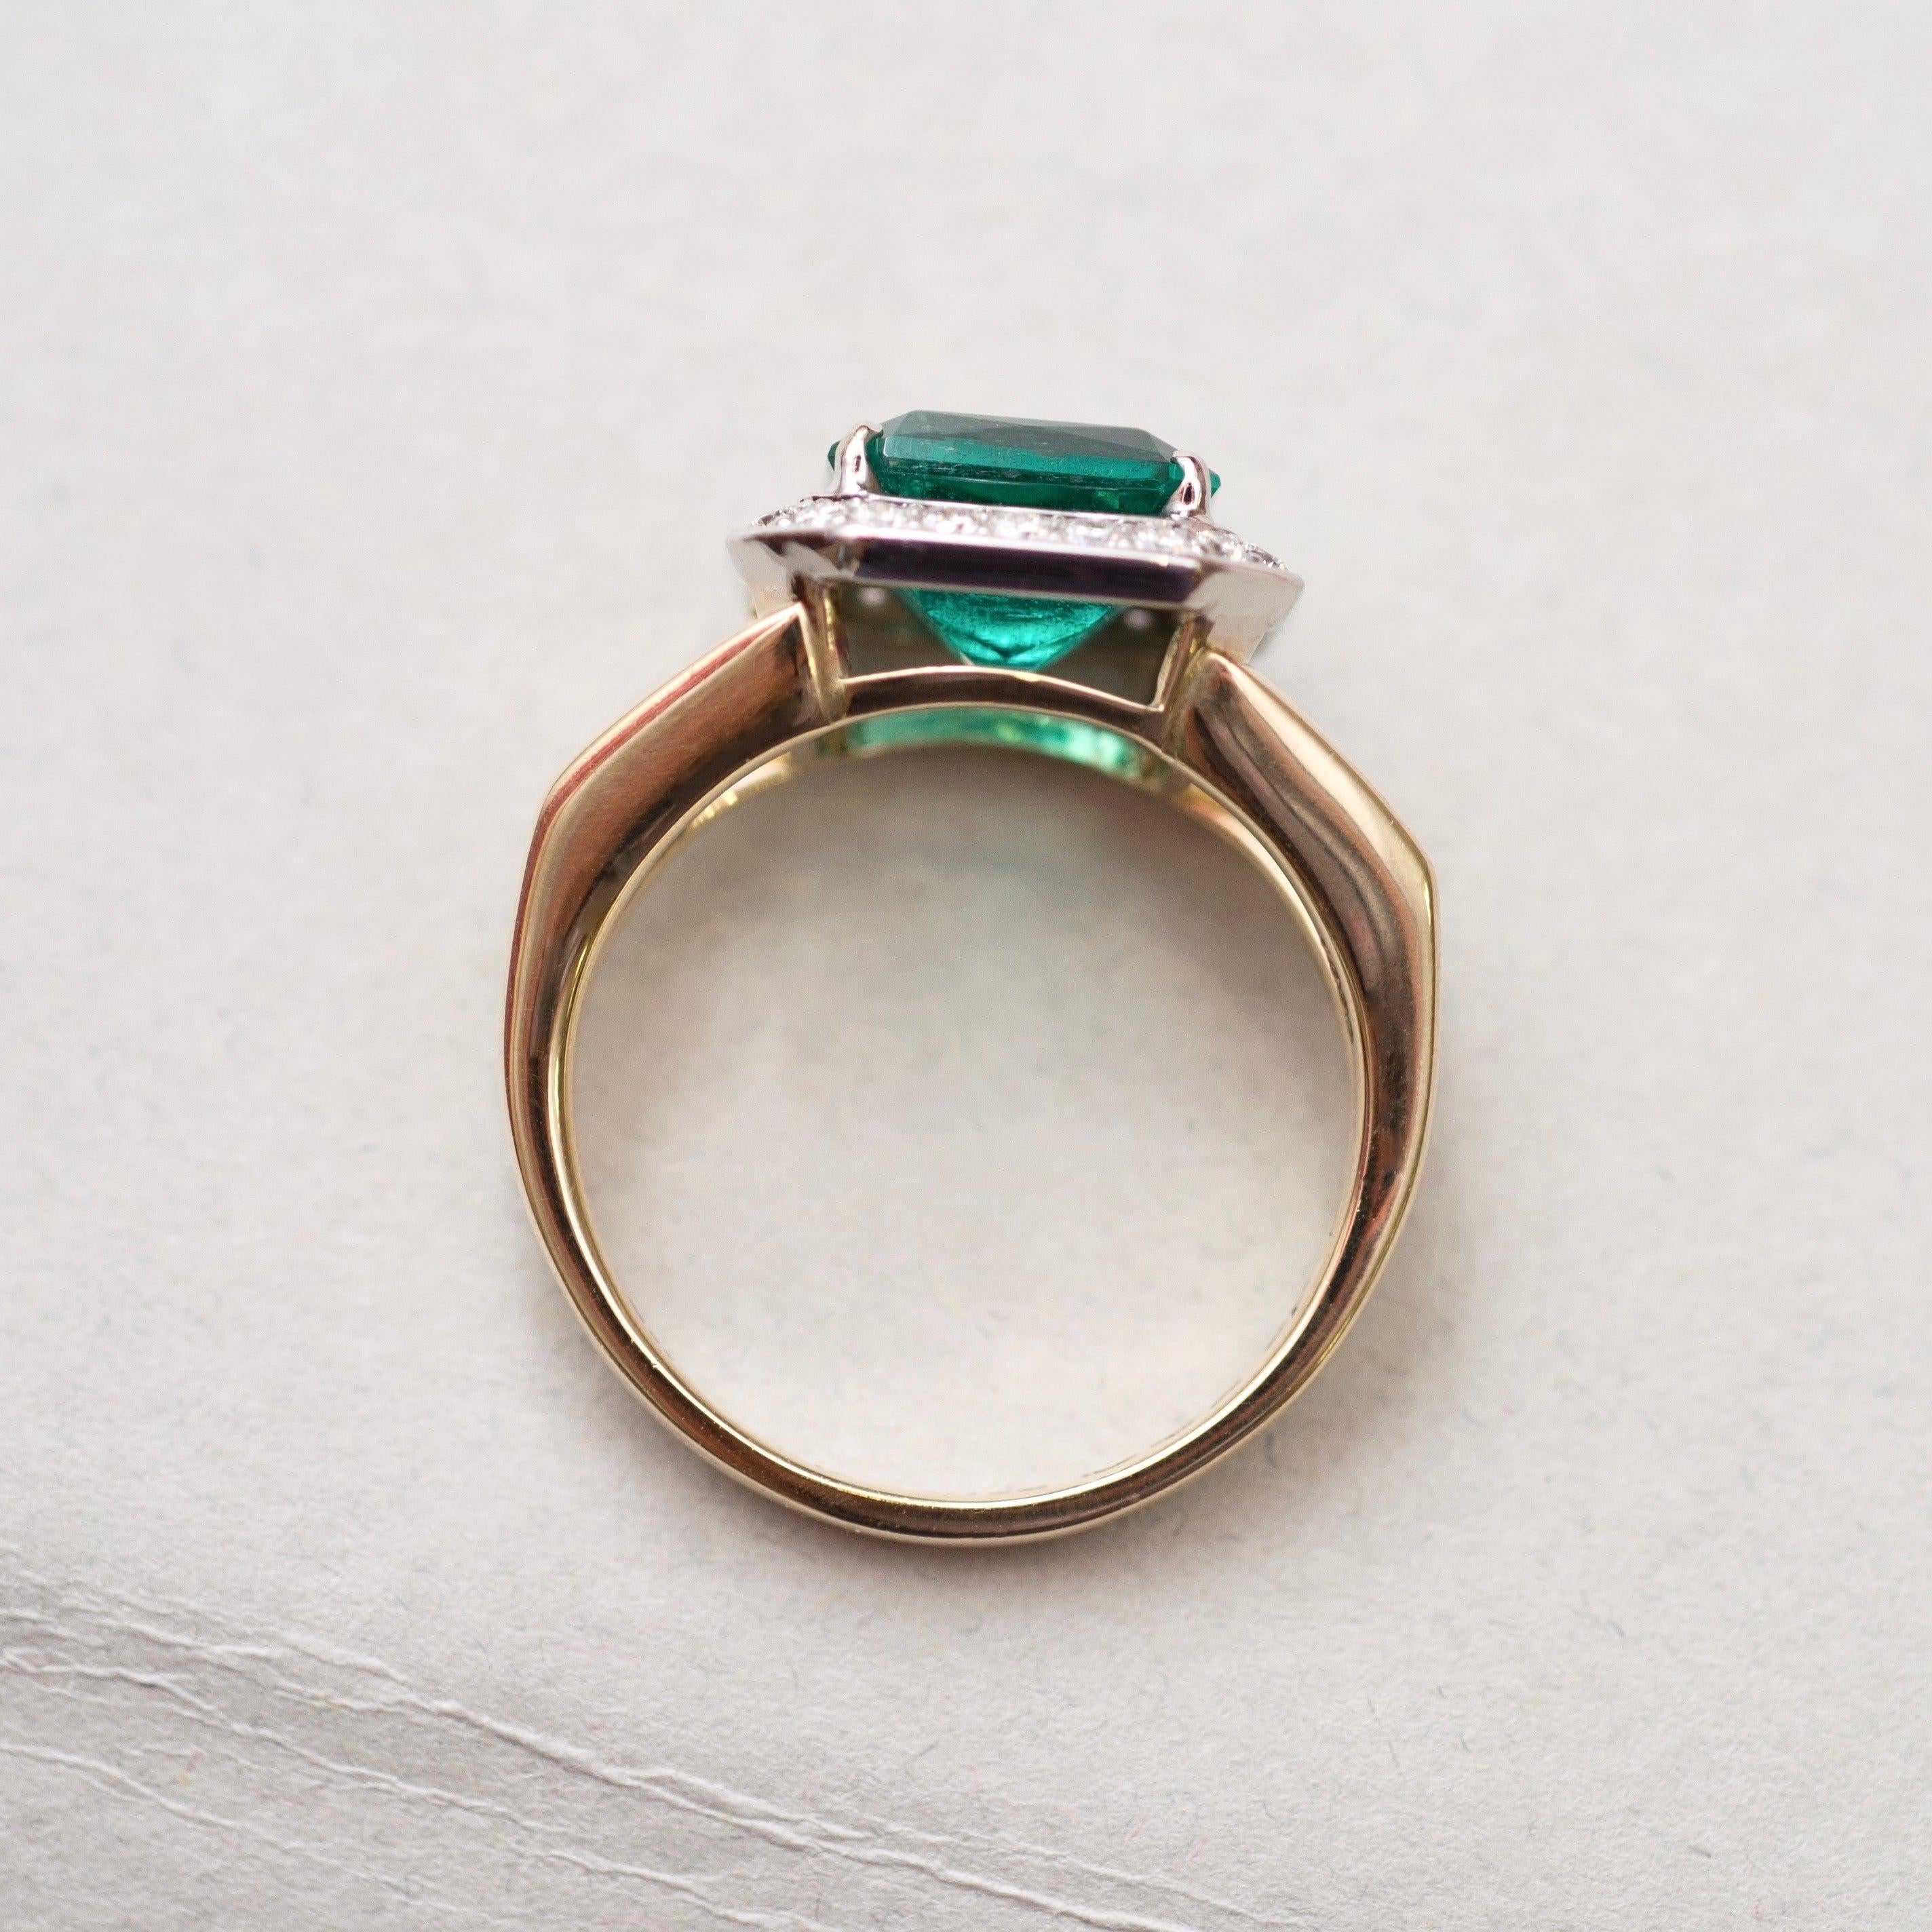 For Sale:  3 Carat Intense Green Natural Emerald Diamonds 18 Karat Yellow White Gold Ring 5